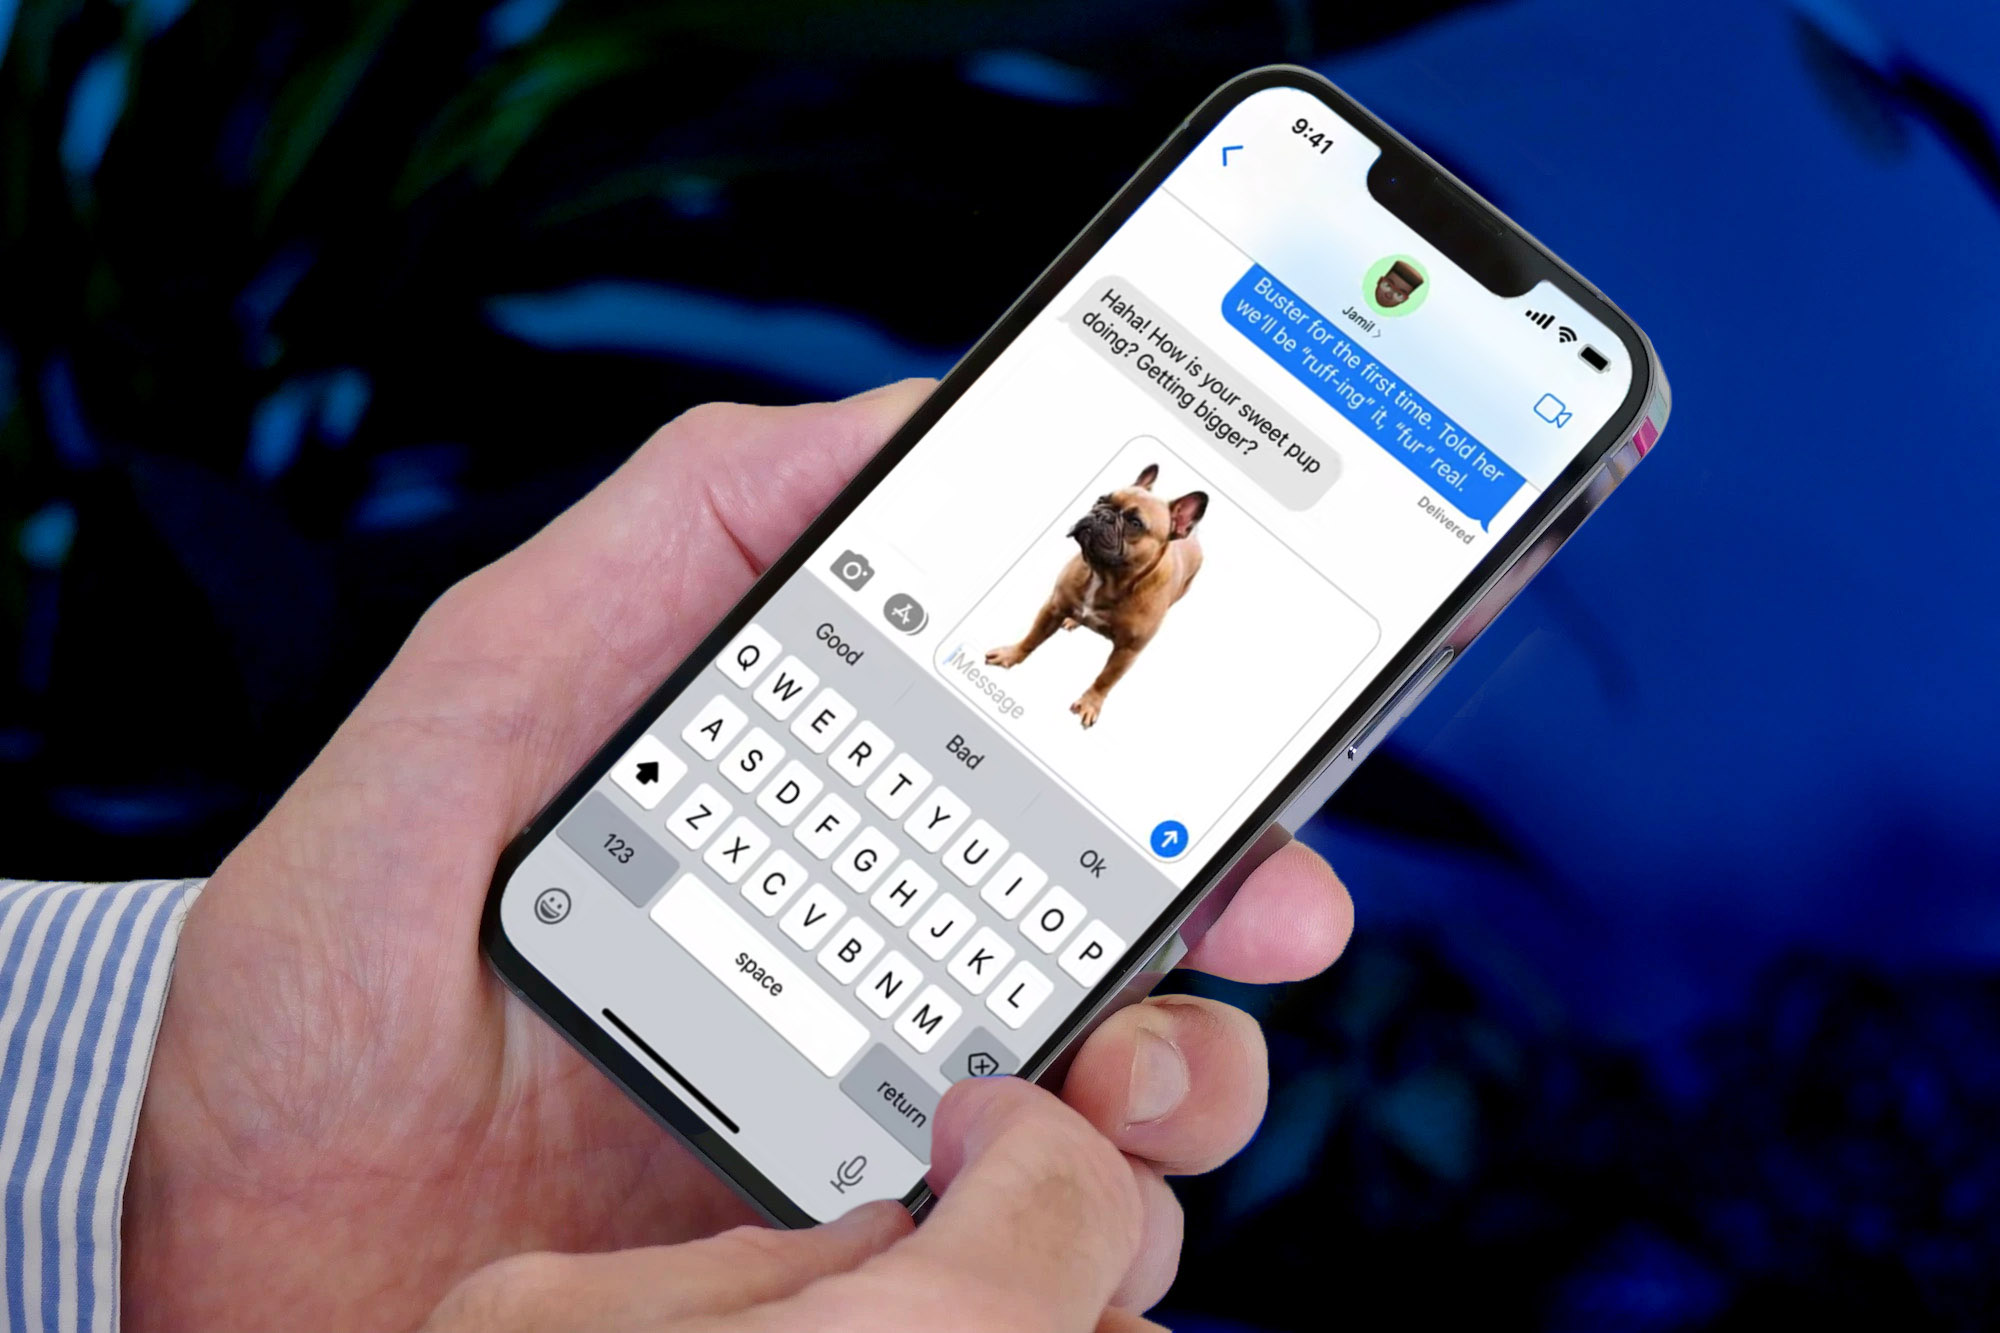 La función de eliminación de fondo de imagen de iOS 16 se usa en una foto de un perro.